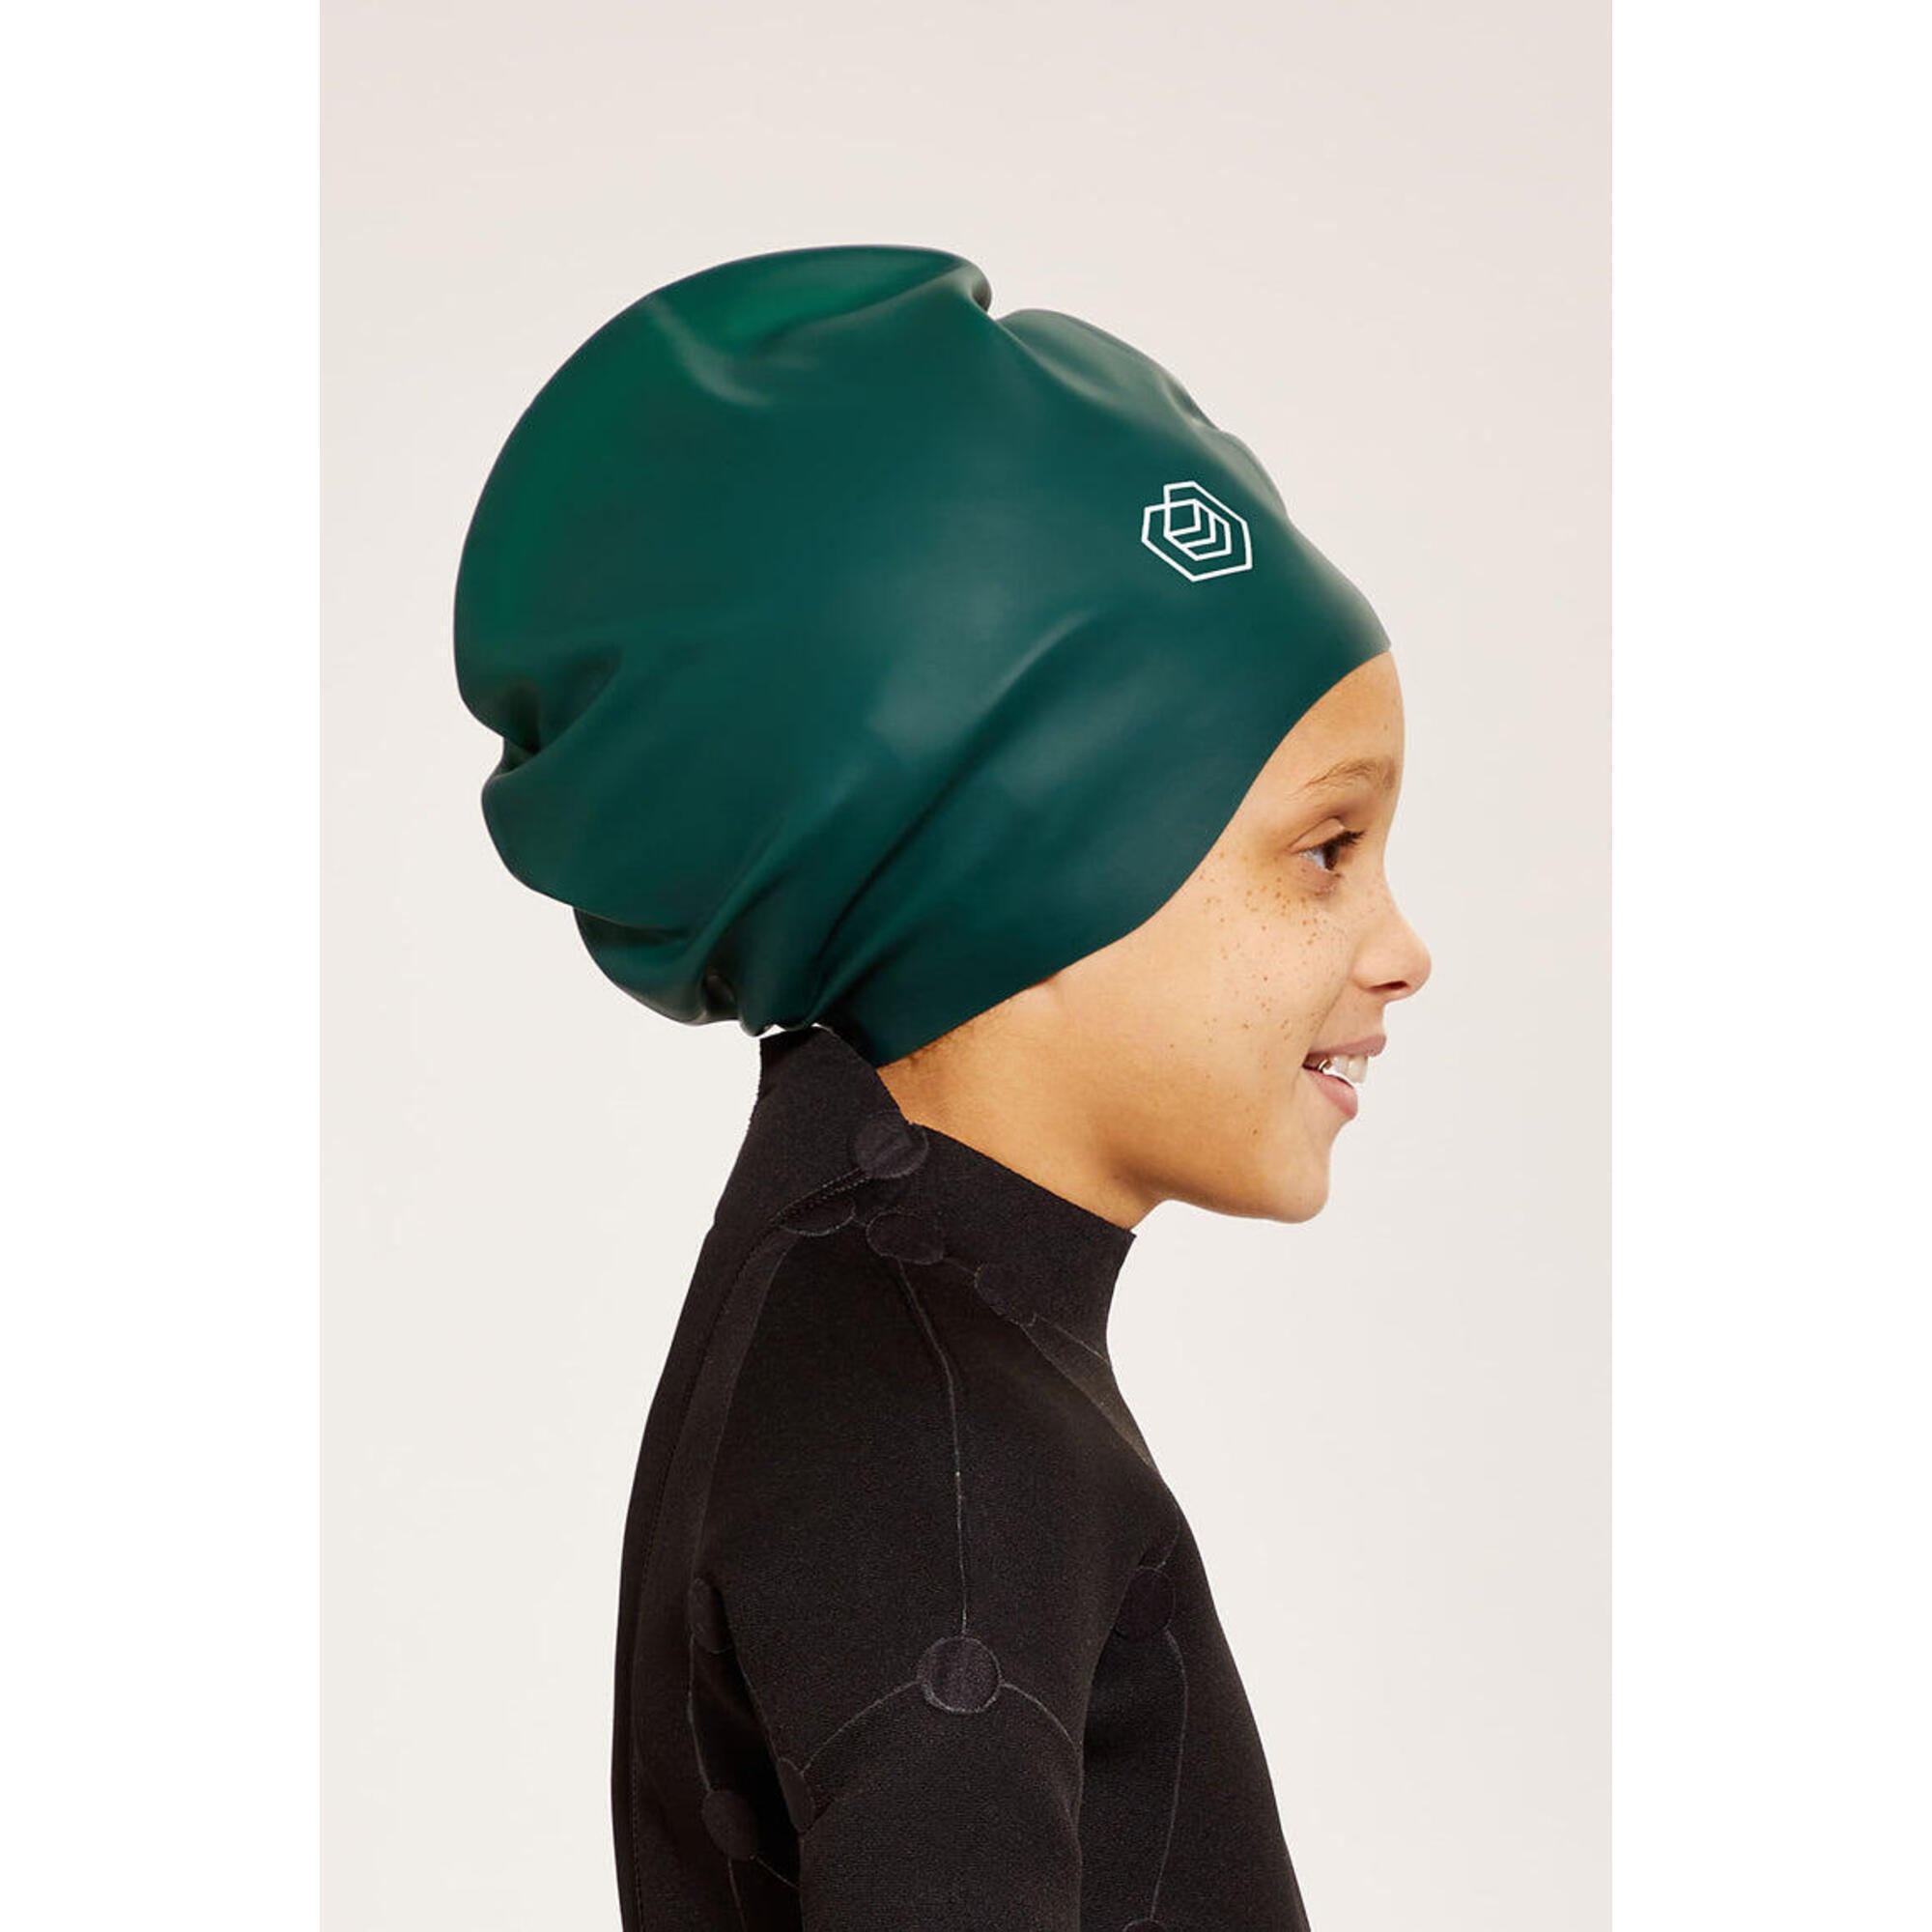 Children's Swim Cap for Long Hair (Large) - Green 1/5